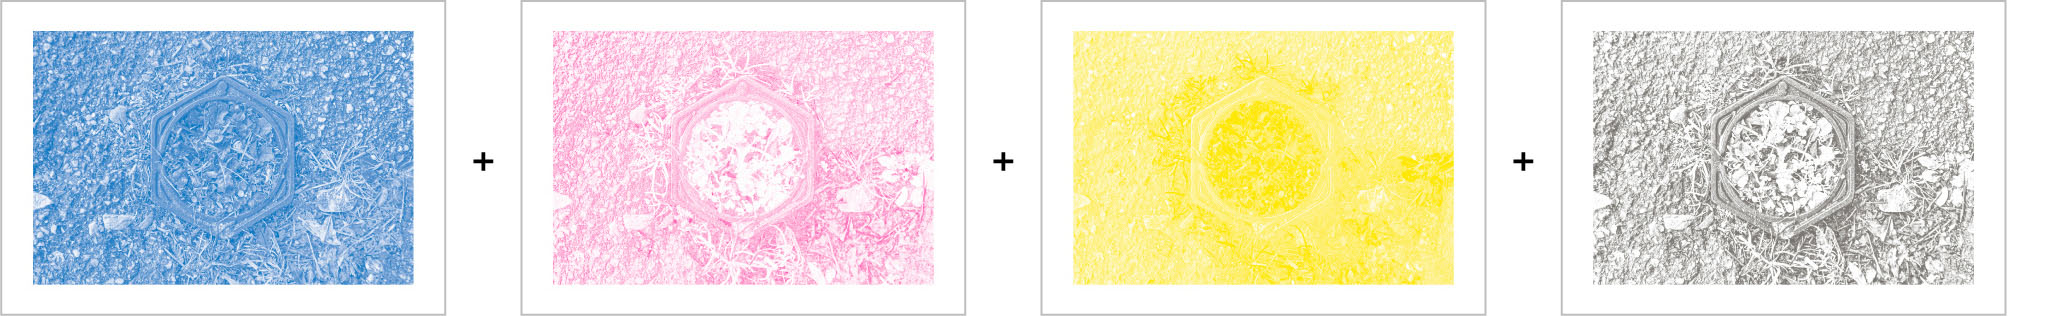 Aperçu en couleurs des fichiers d'impression en niveau de gris pour chaque couche de couleurs, schéma Système Sensible